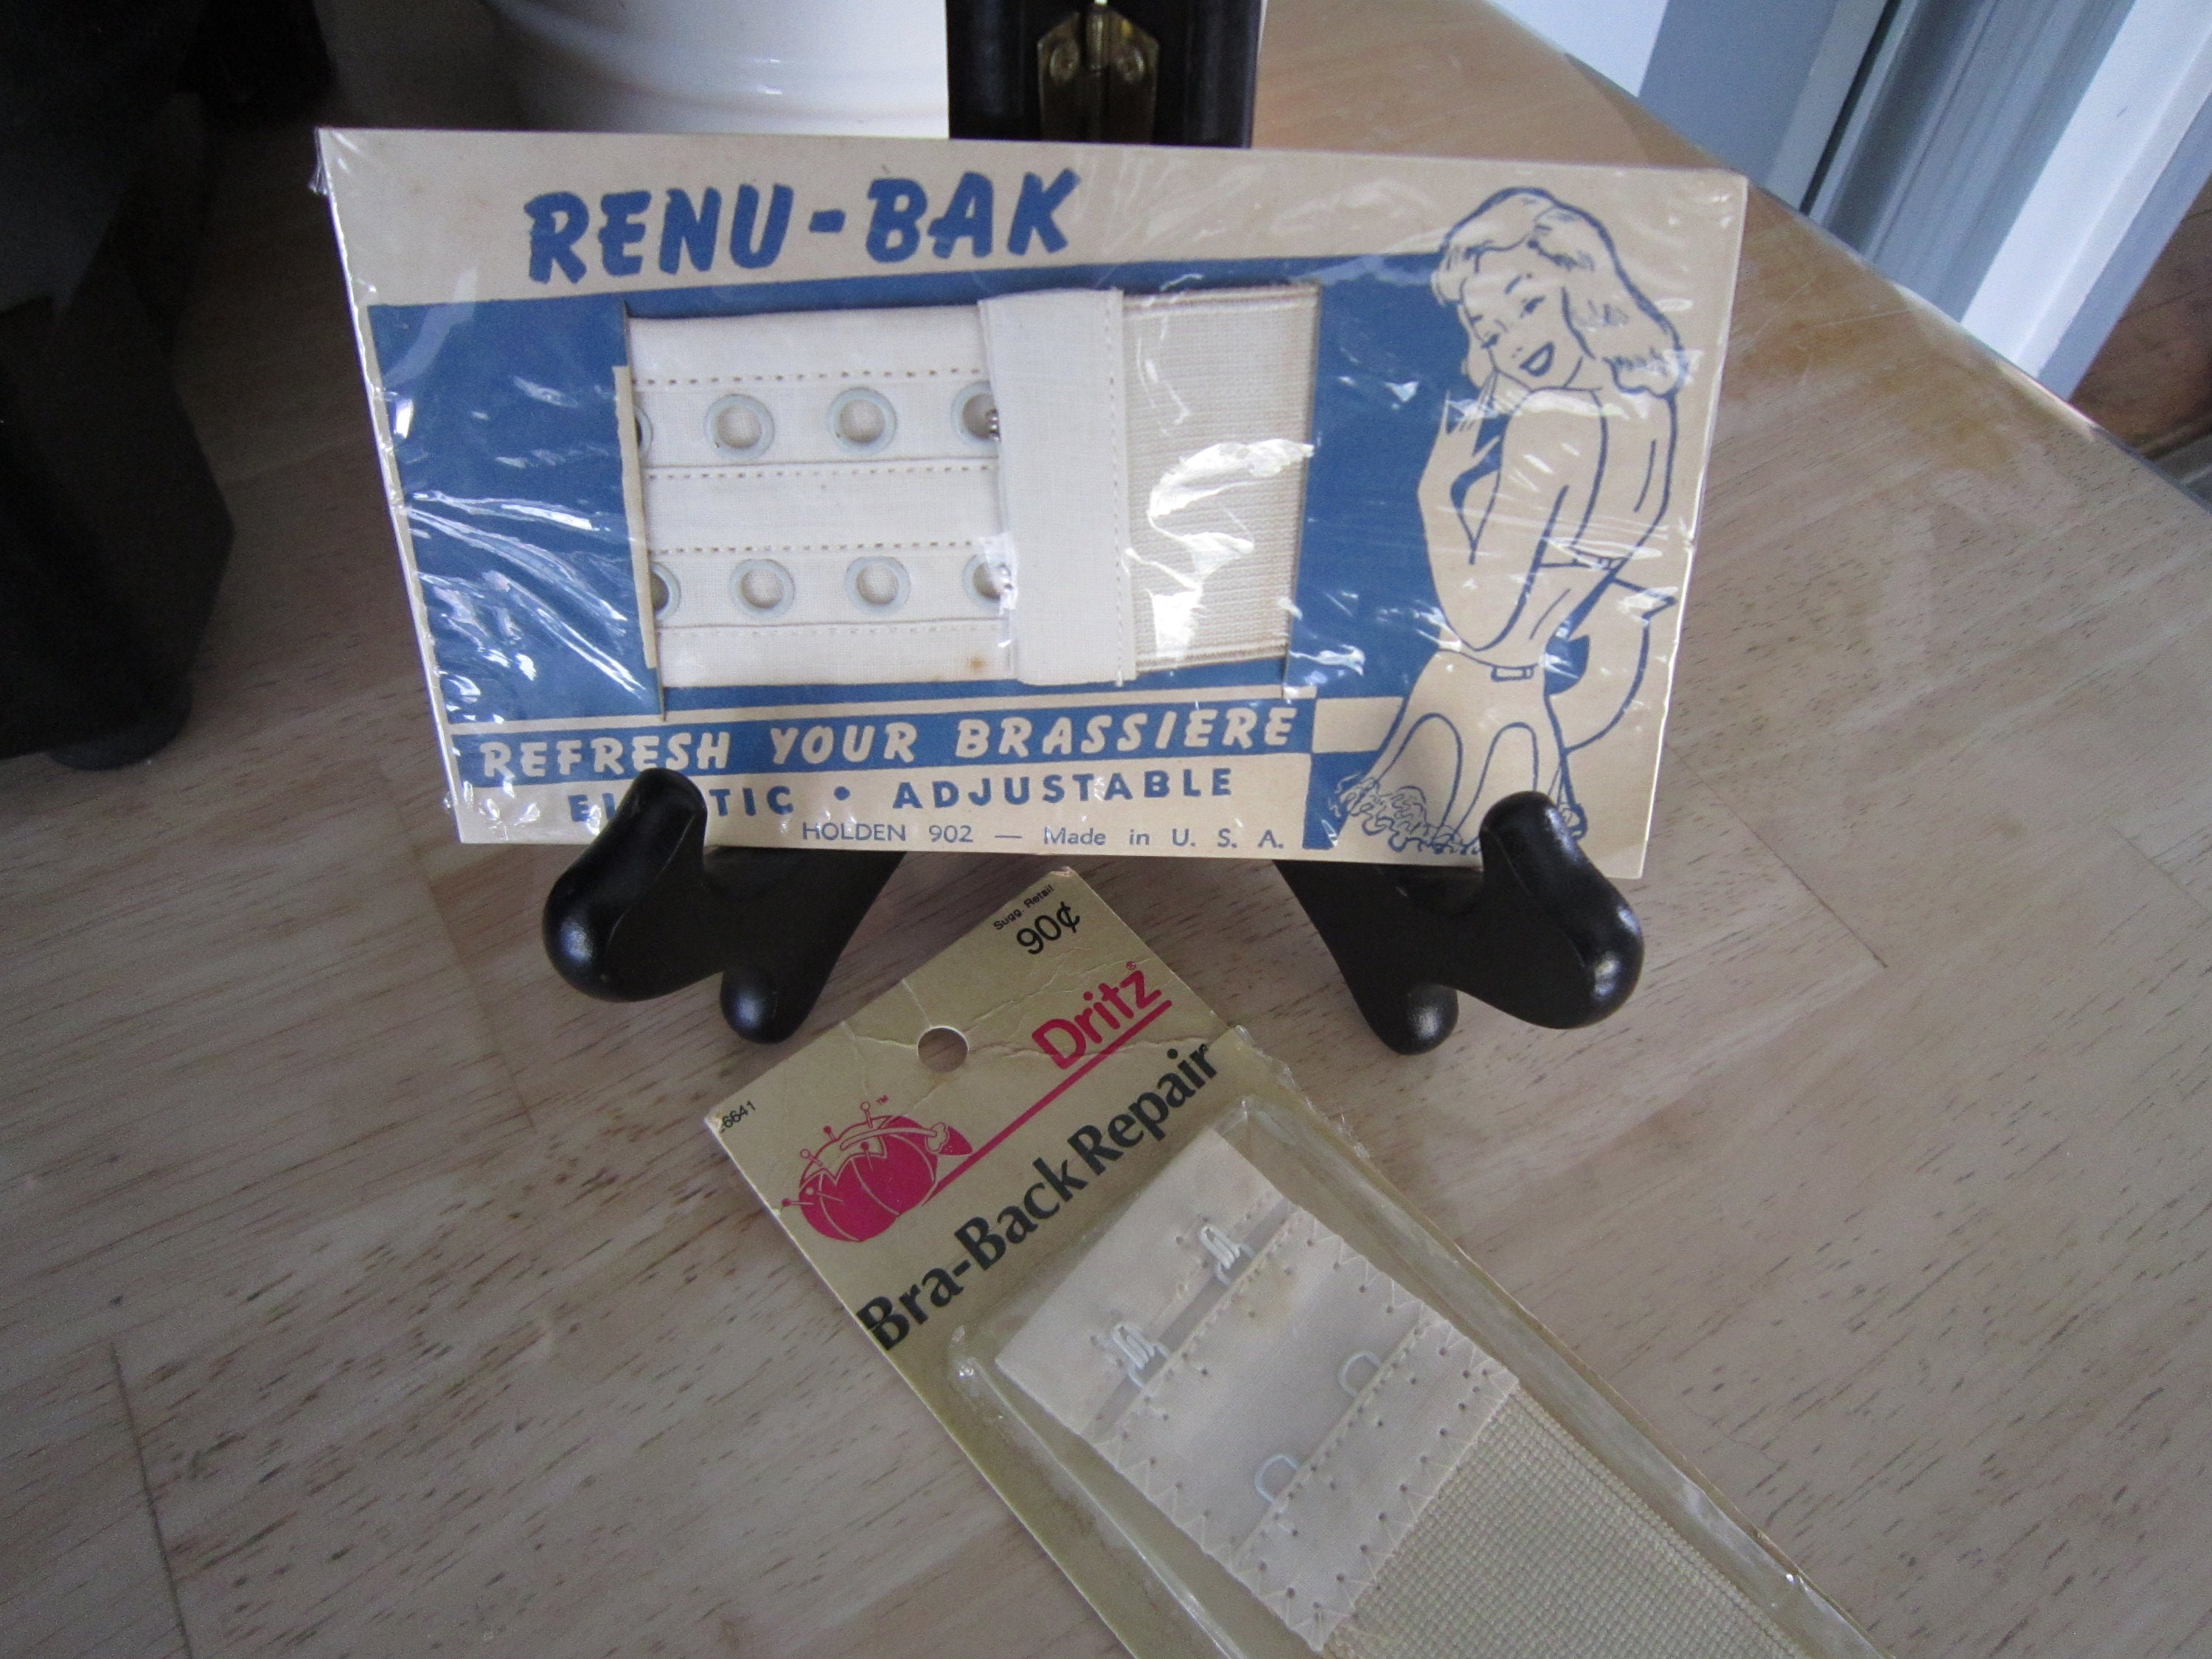 Bra Back Repair, Renu-Bak, Brassiere Repair Kits, Vintage NOS